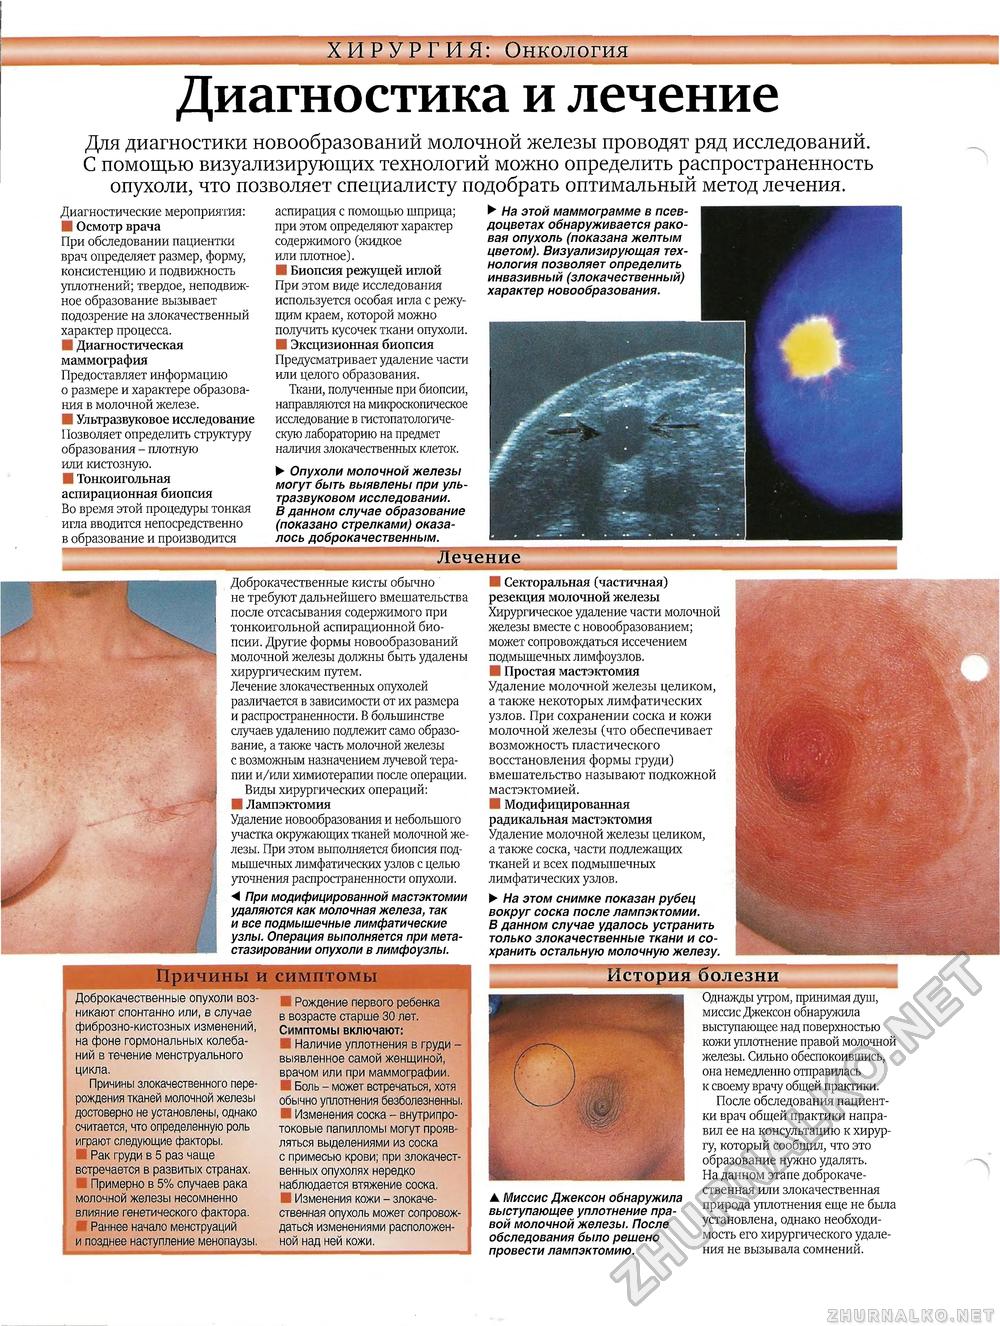 рак груди симптомы у женщин в менопаузе фото 29